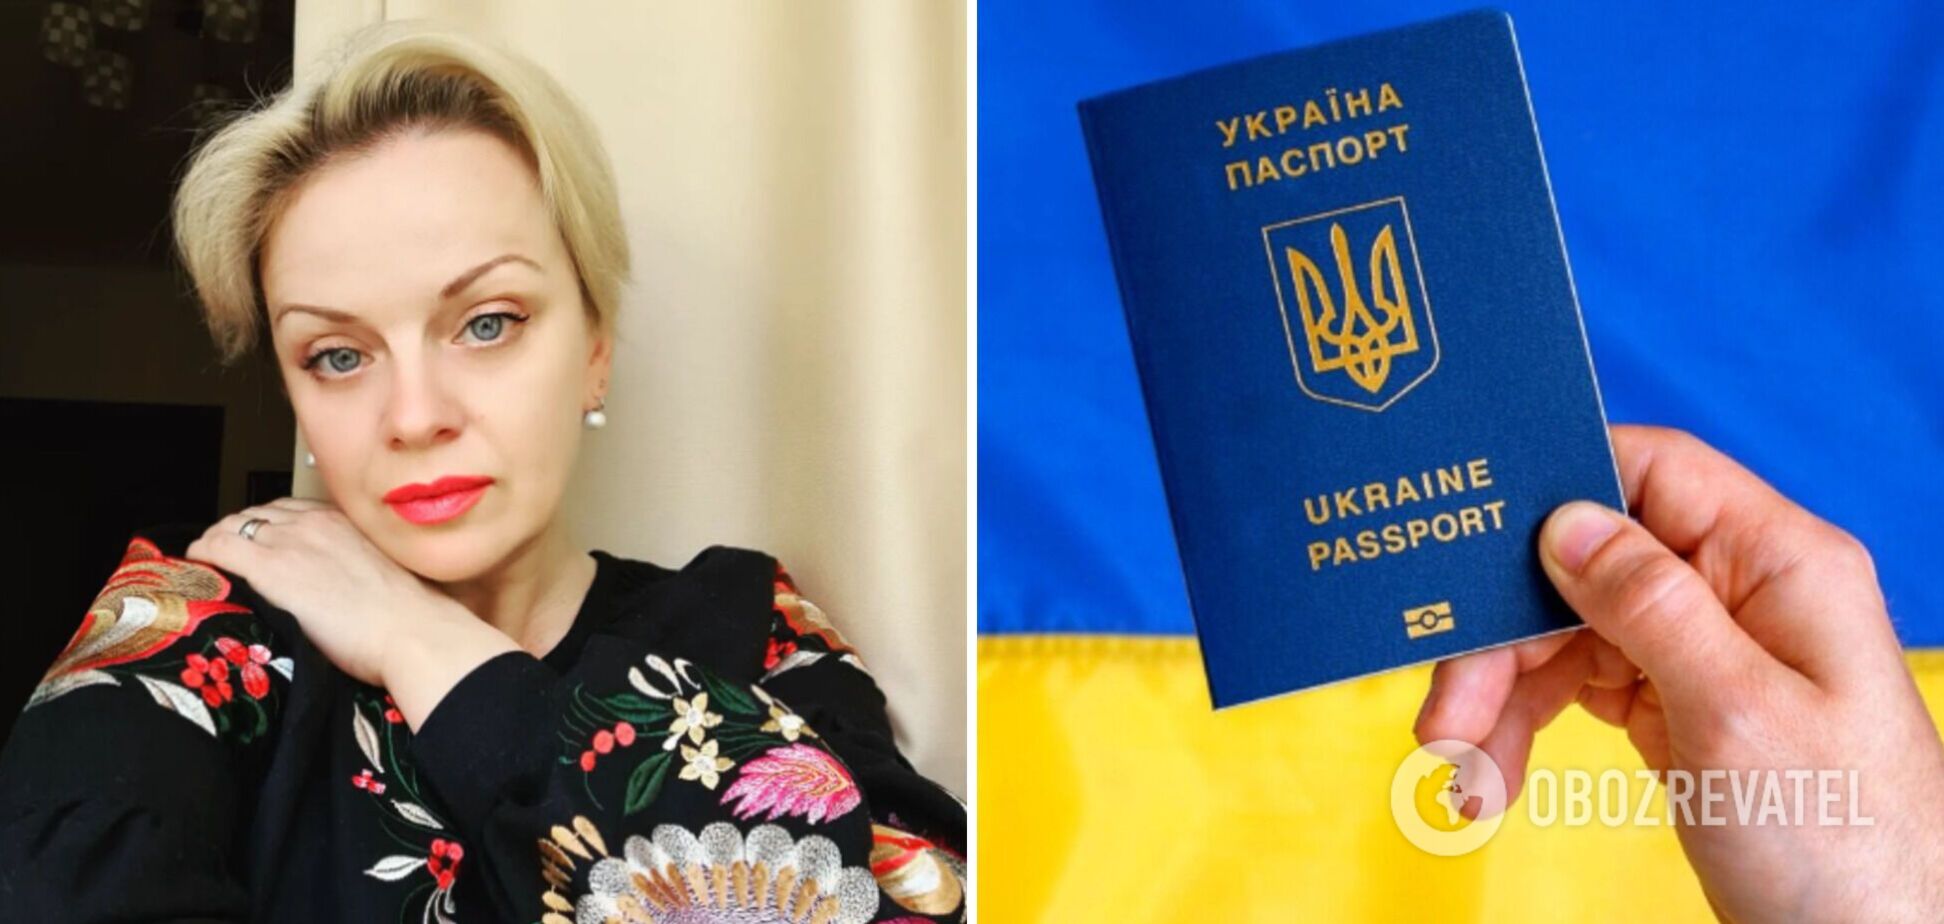 Ирма Витовская: хочешь иметь паспорт Украины — общайся на украинском. Ты должен ему соответствовать